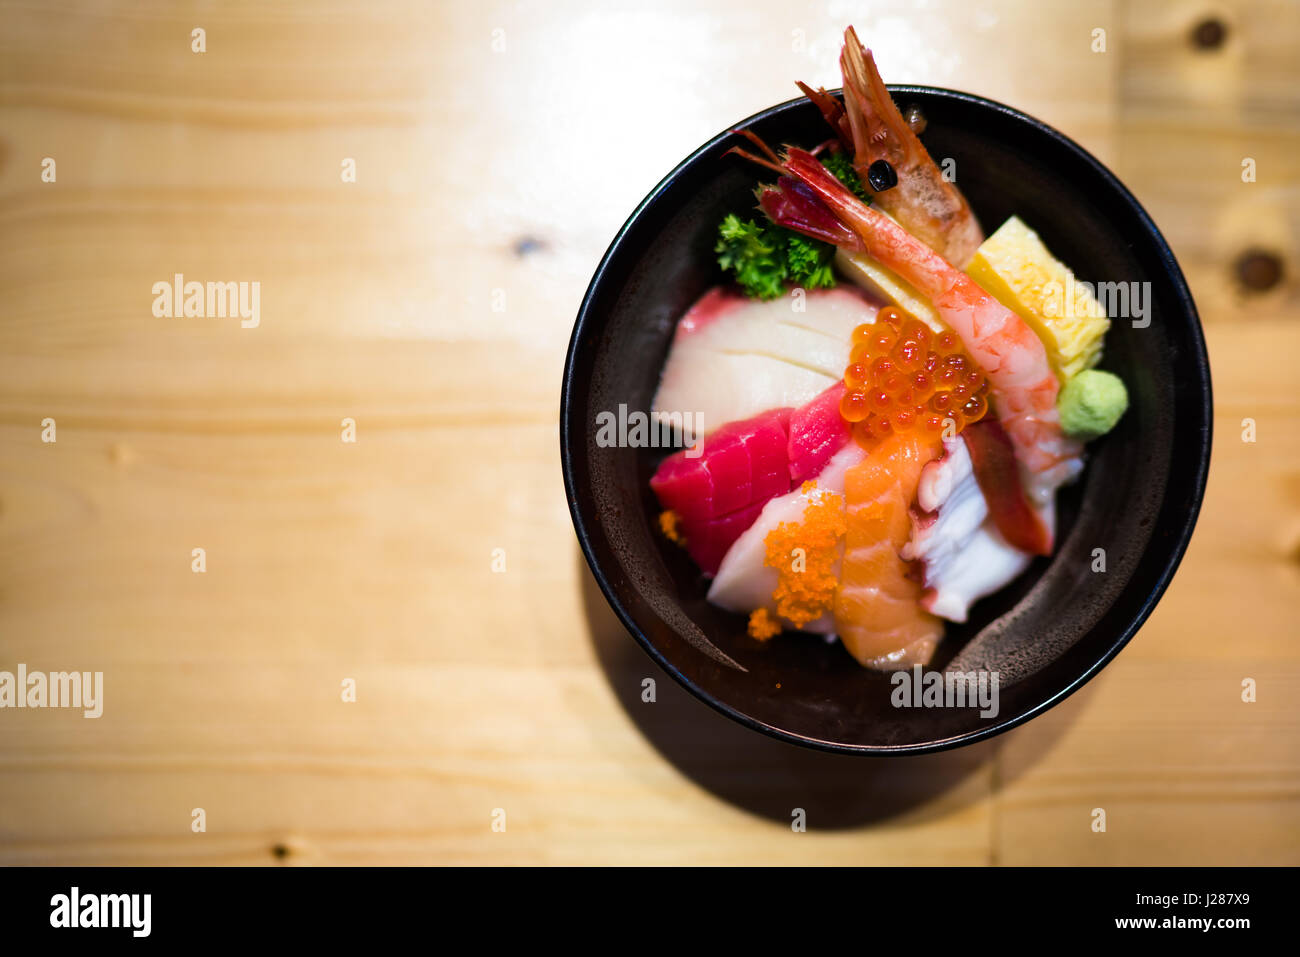 Chirashi sushi, nourriture japonaise bol de riz avec matières Sashimi au saumon, fruits de mer, vue du dessus, assombrir edge, copie de l'espace sur une table en bois, l'accent sur des oeufs de saumon Banque D'Images